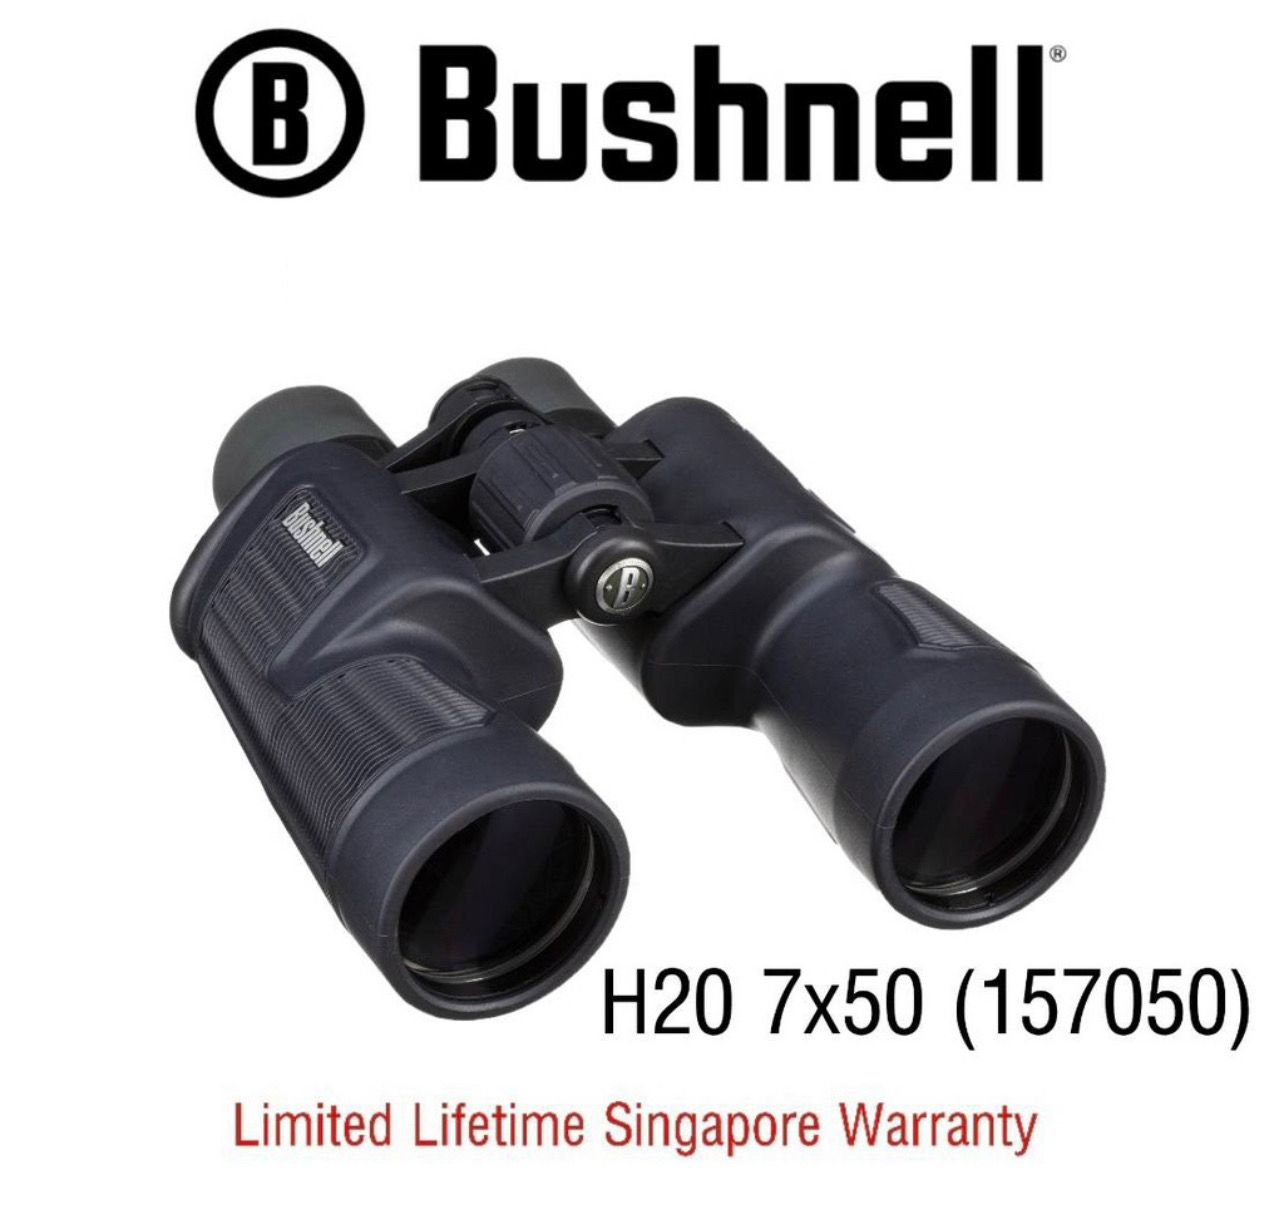 Bushnell Waterproof Binoculars H20  7x50 (157050) - Limited Lifetime Warranty